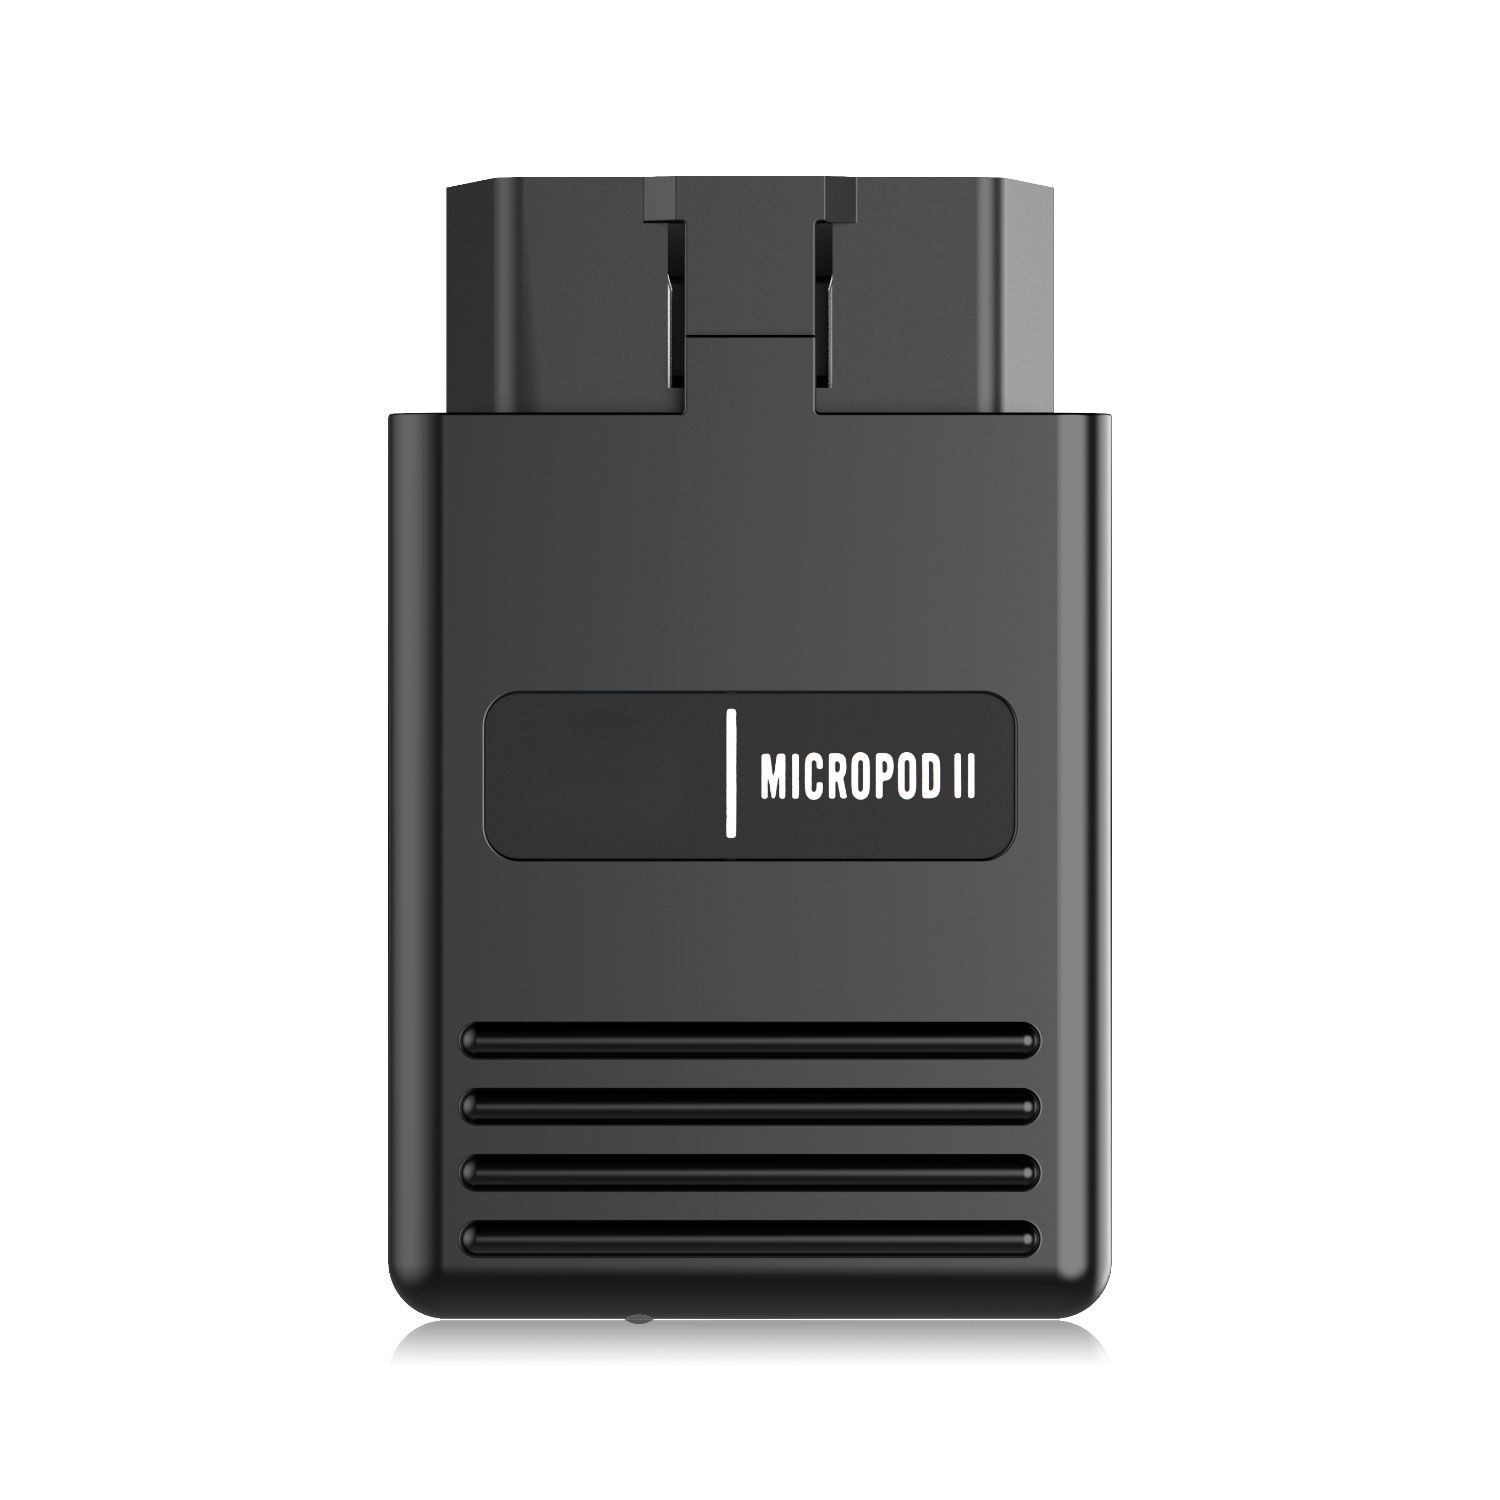 크라이슬러 도지프 V17.04 및 피아트란시아 알파 V17.1.0 500G 하드 드라이브 소프트웨어를 탑재한 wiTech MicroPod 2